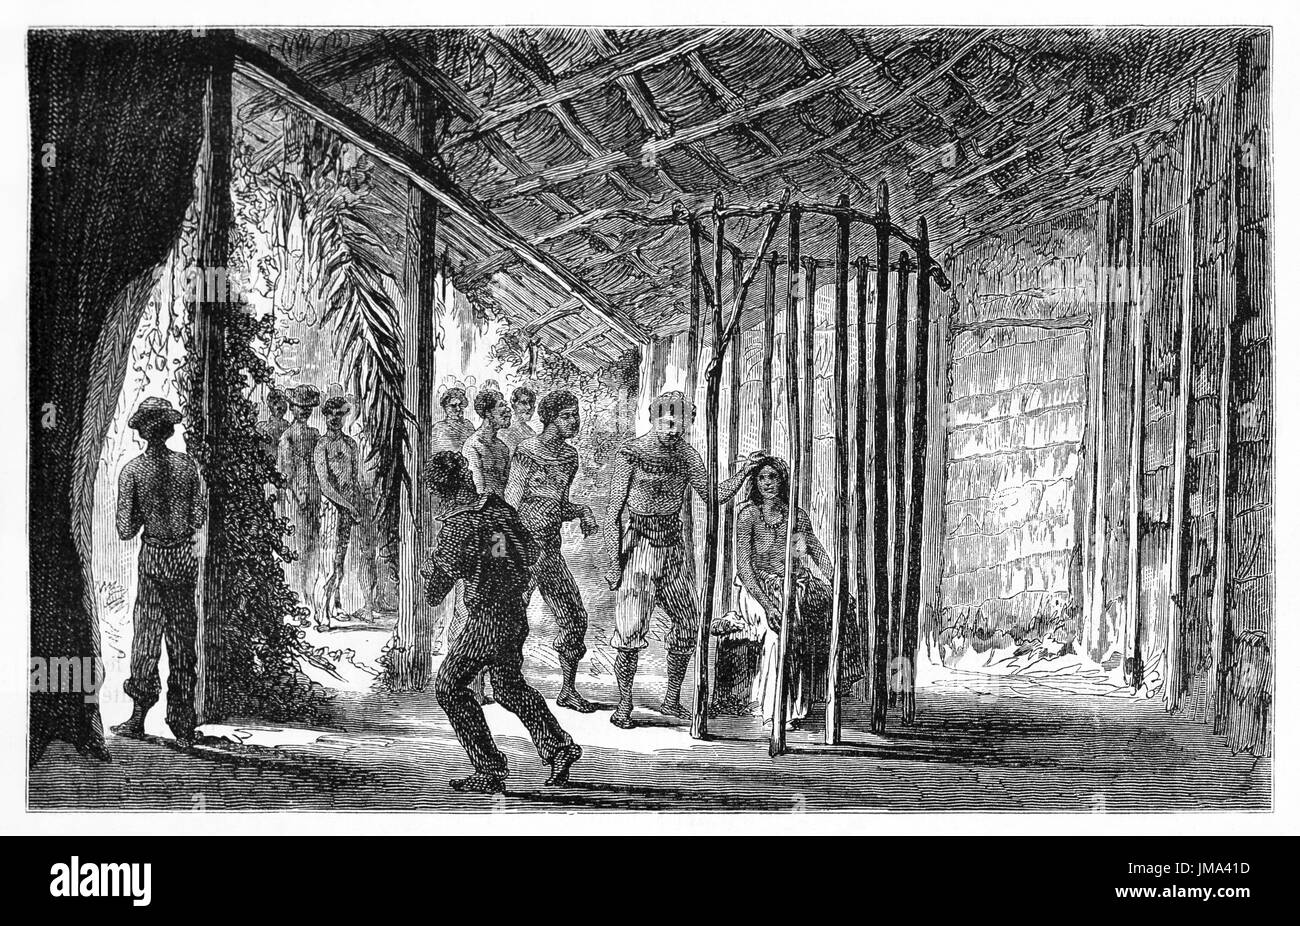 Mundurucu rite passage d'une fille de l'adolescence à la jeunesse dans une cabane à crépuscule din, bassin amazonien. Art de Riou, Biard et Dumont, le Tour du monde, 1861 Banque D'Images